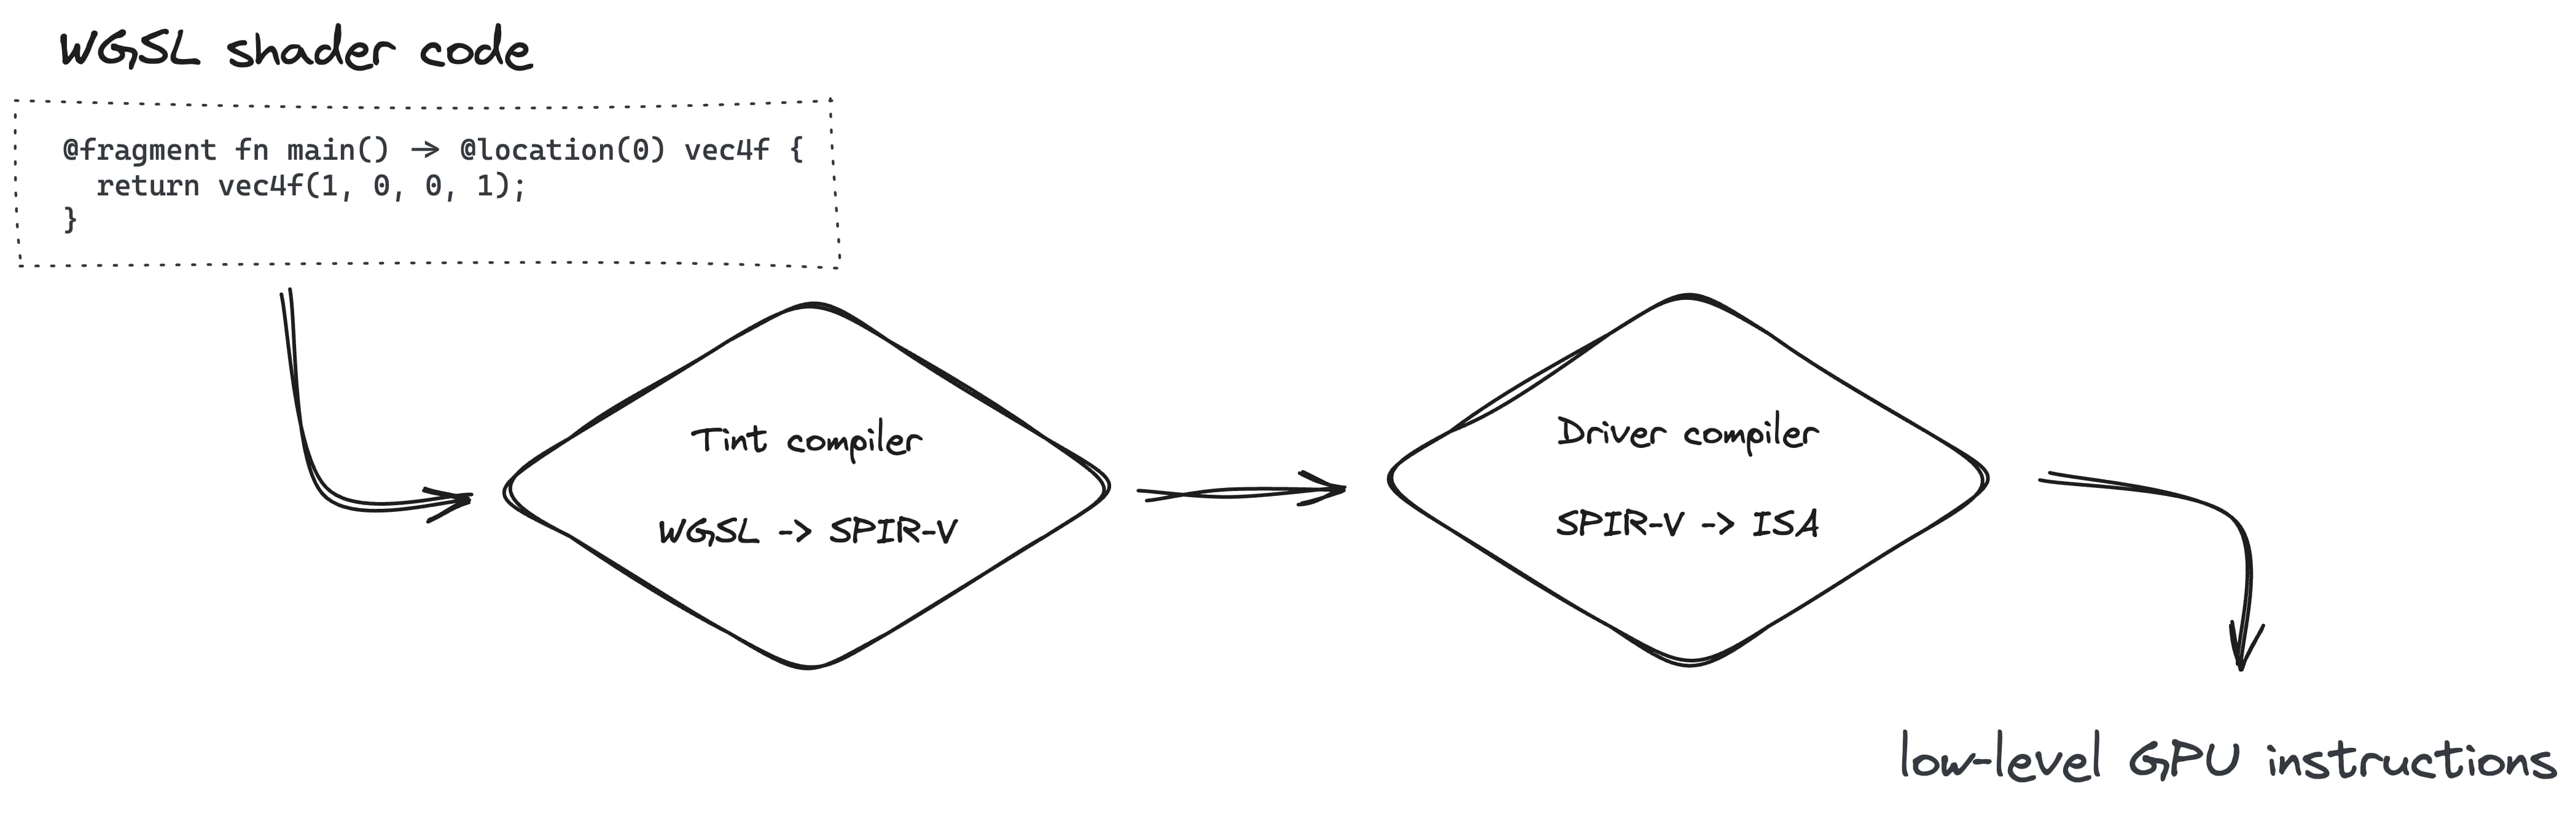 Создание конвейера рендеринга включает преобразование WGSL в SPIR-V с помощью компилятора Tint, а затем в ISA с помощью компилятора драйверов.